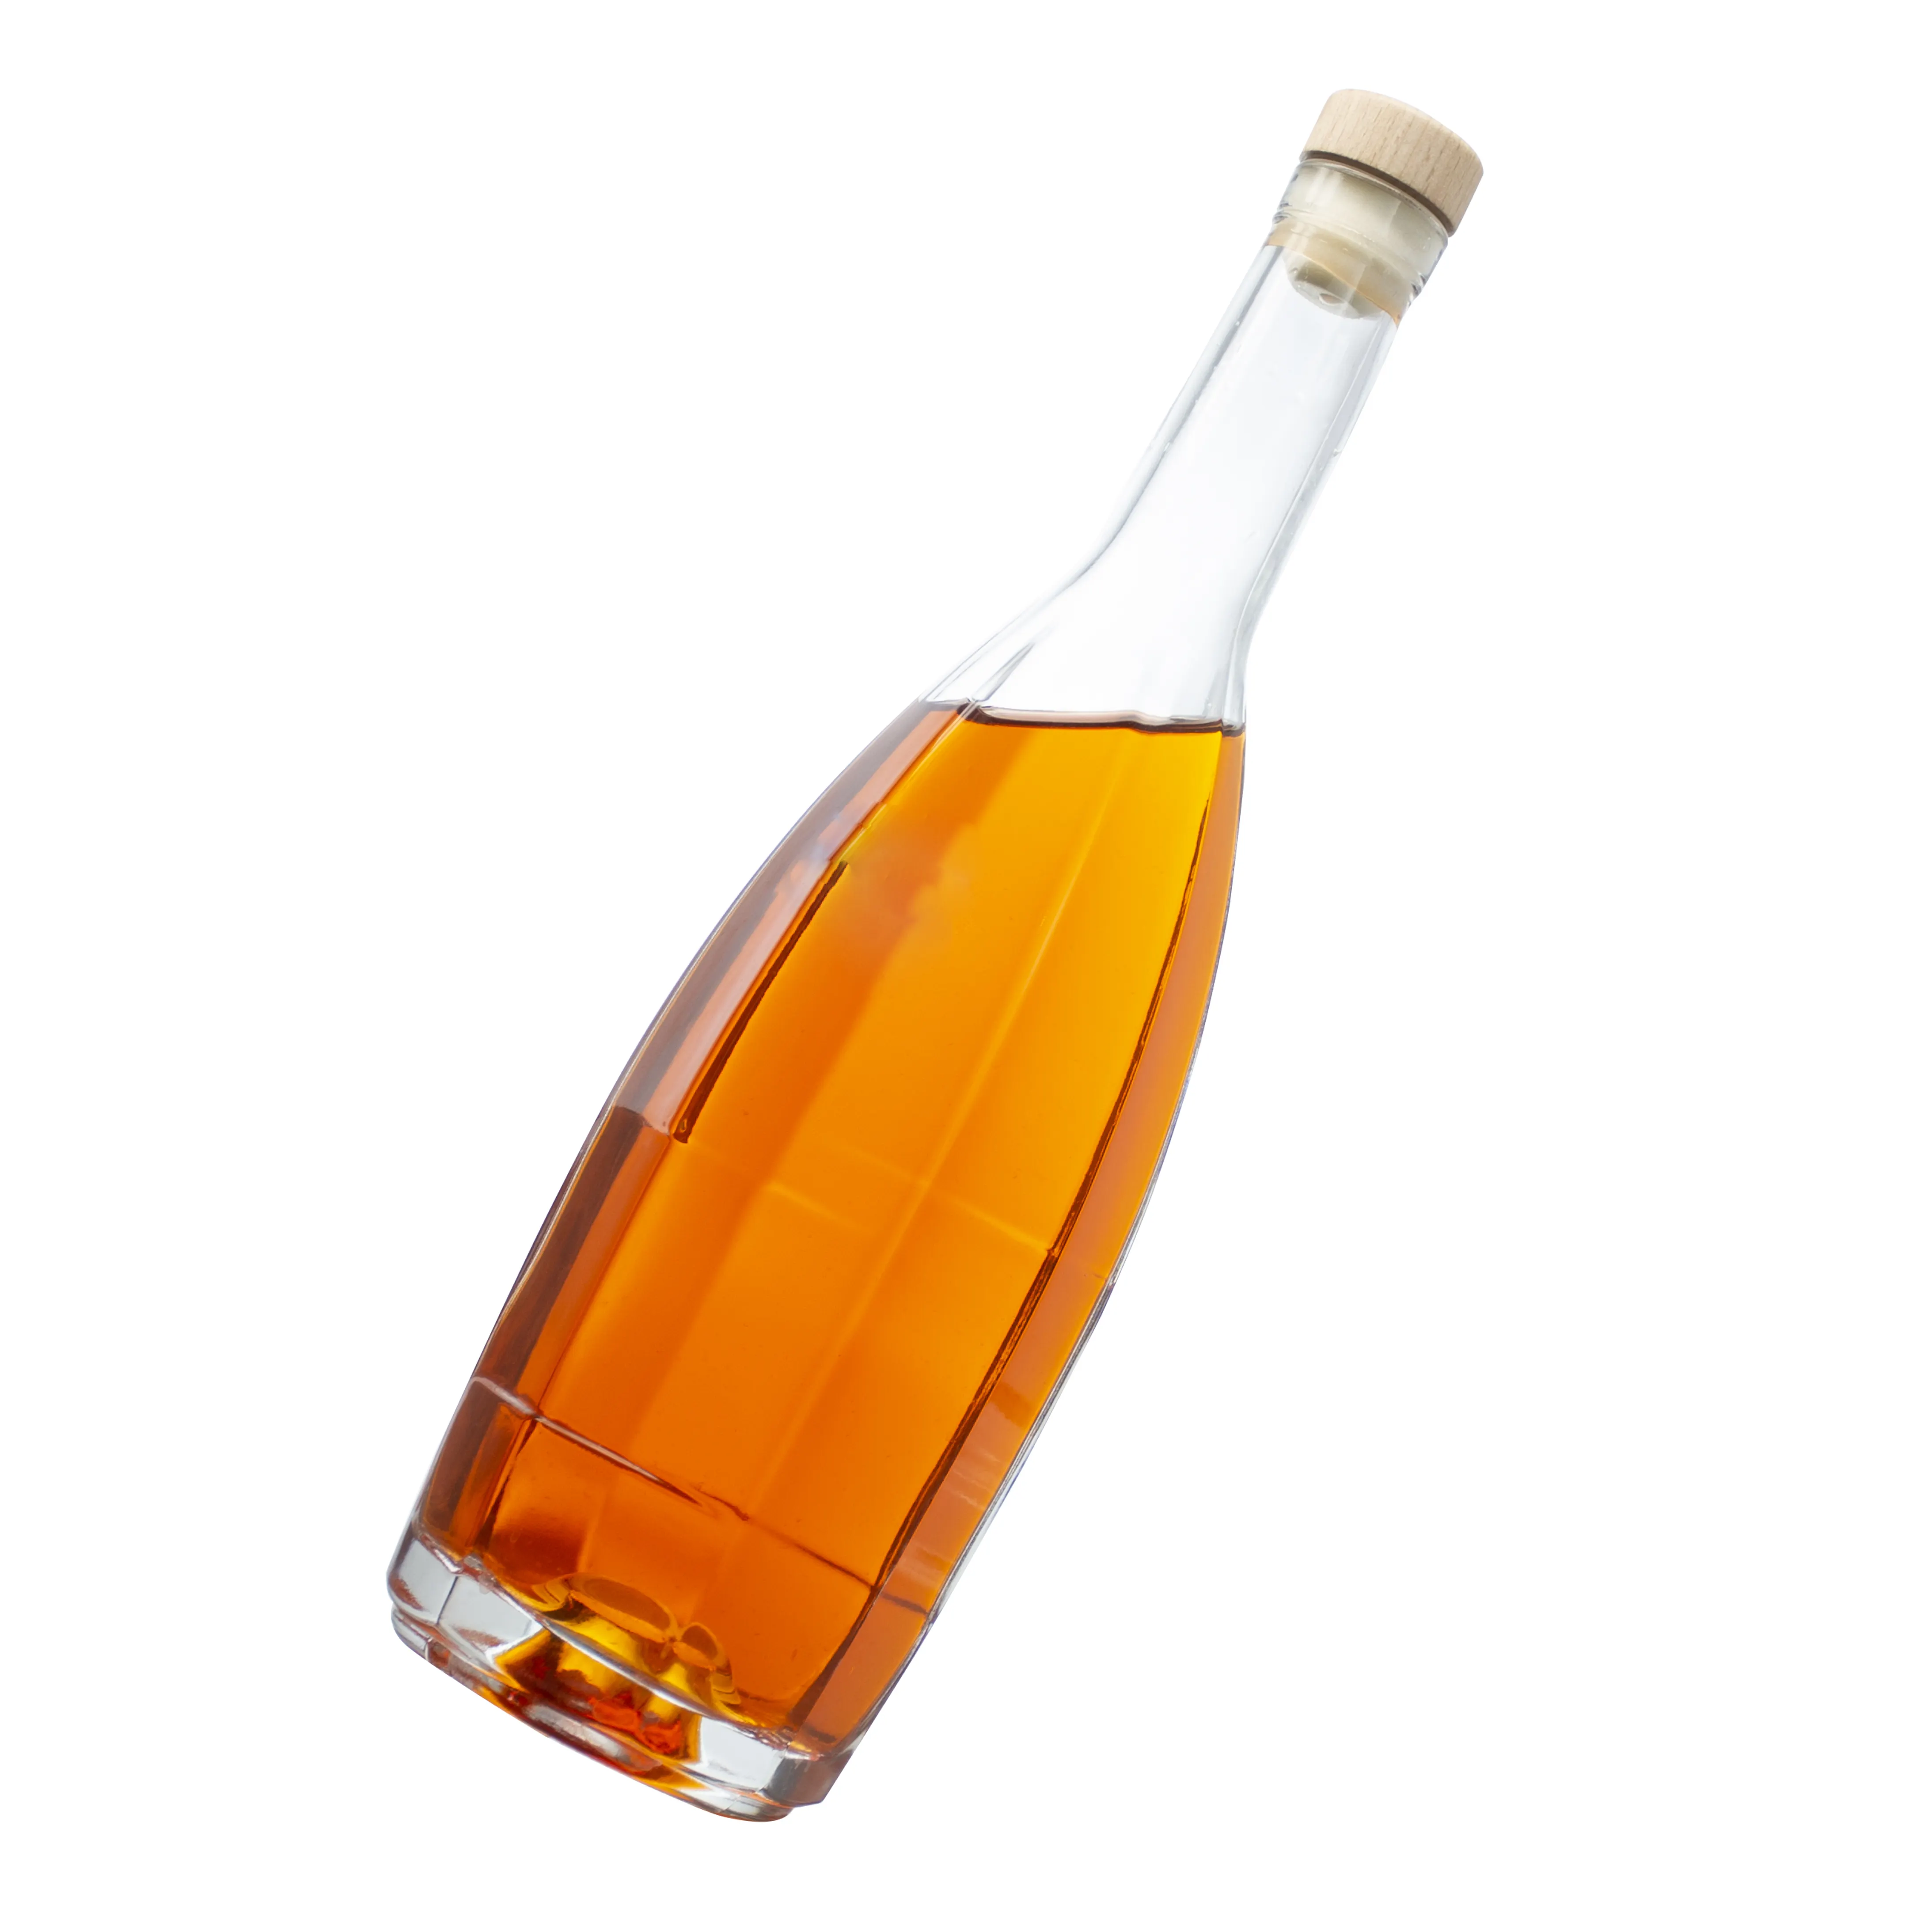 ギンラムスピリッツに使用されるカスタマイズされた空のガラス酒ワインボトルウイスキーボトルテキーラアルコールウイスキーウォッカウイスキーフィリング